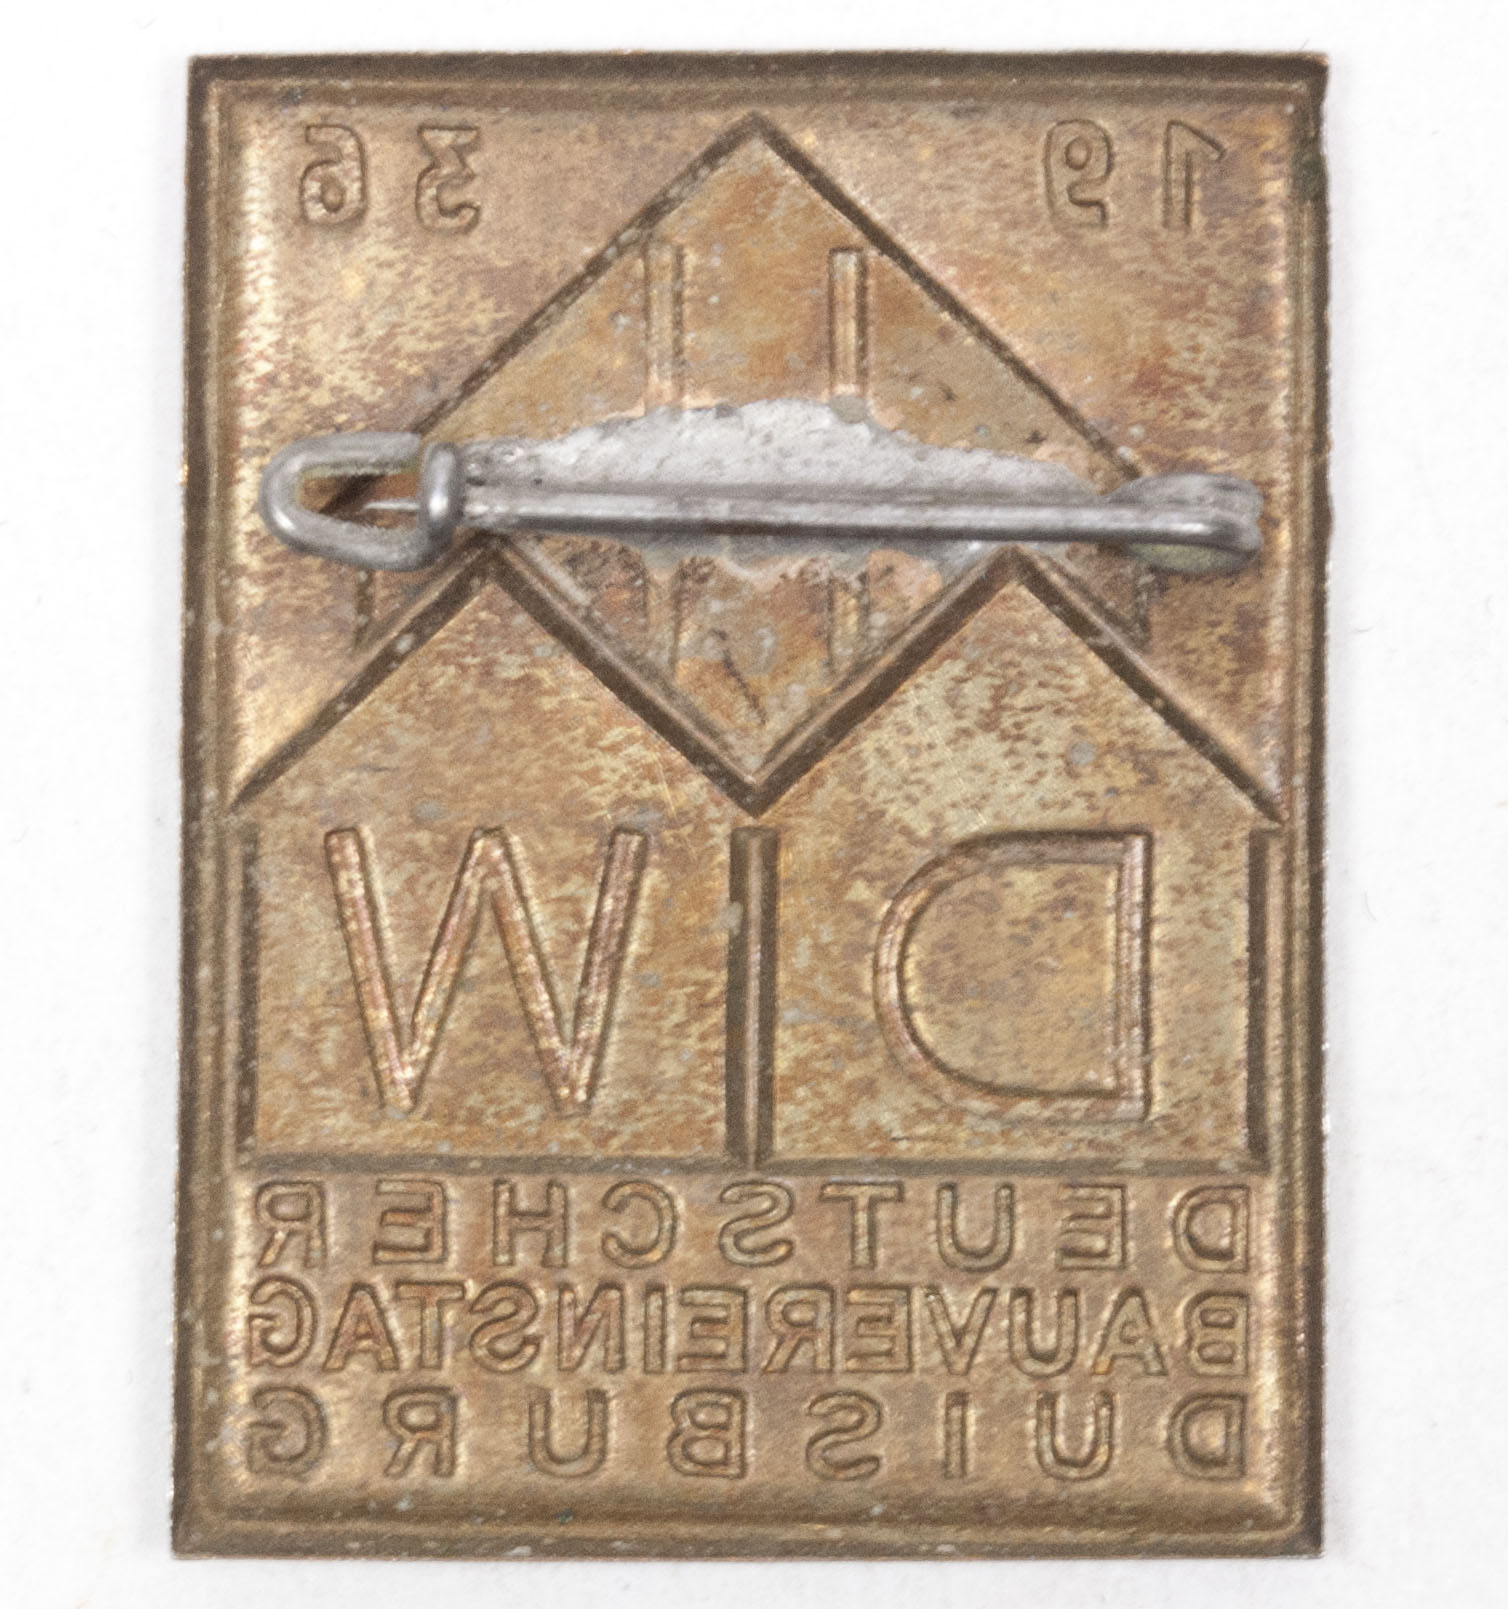 Deutsche Bauvereinstag Duisburg - DHW - 1936 abzeichen